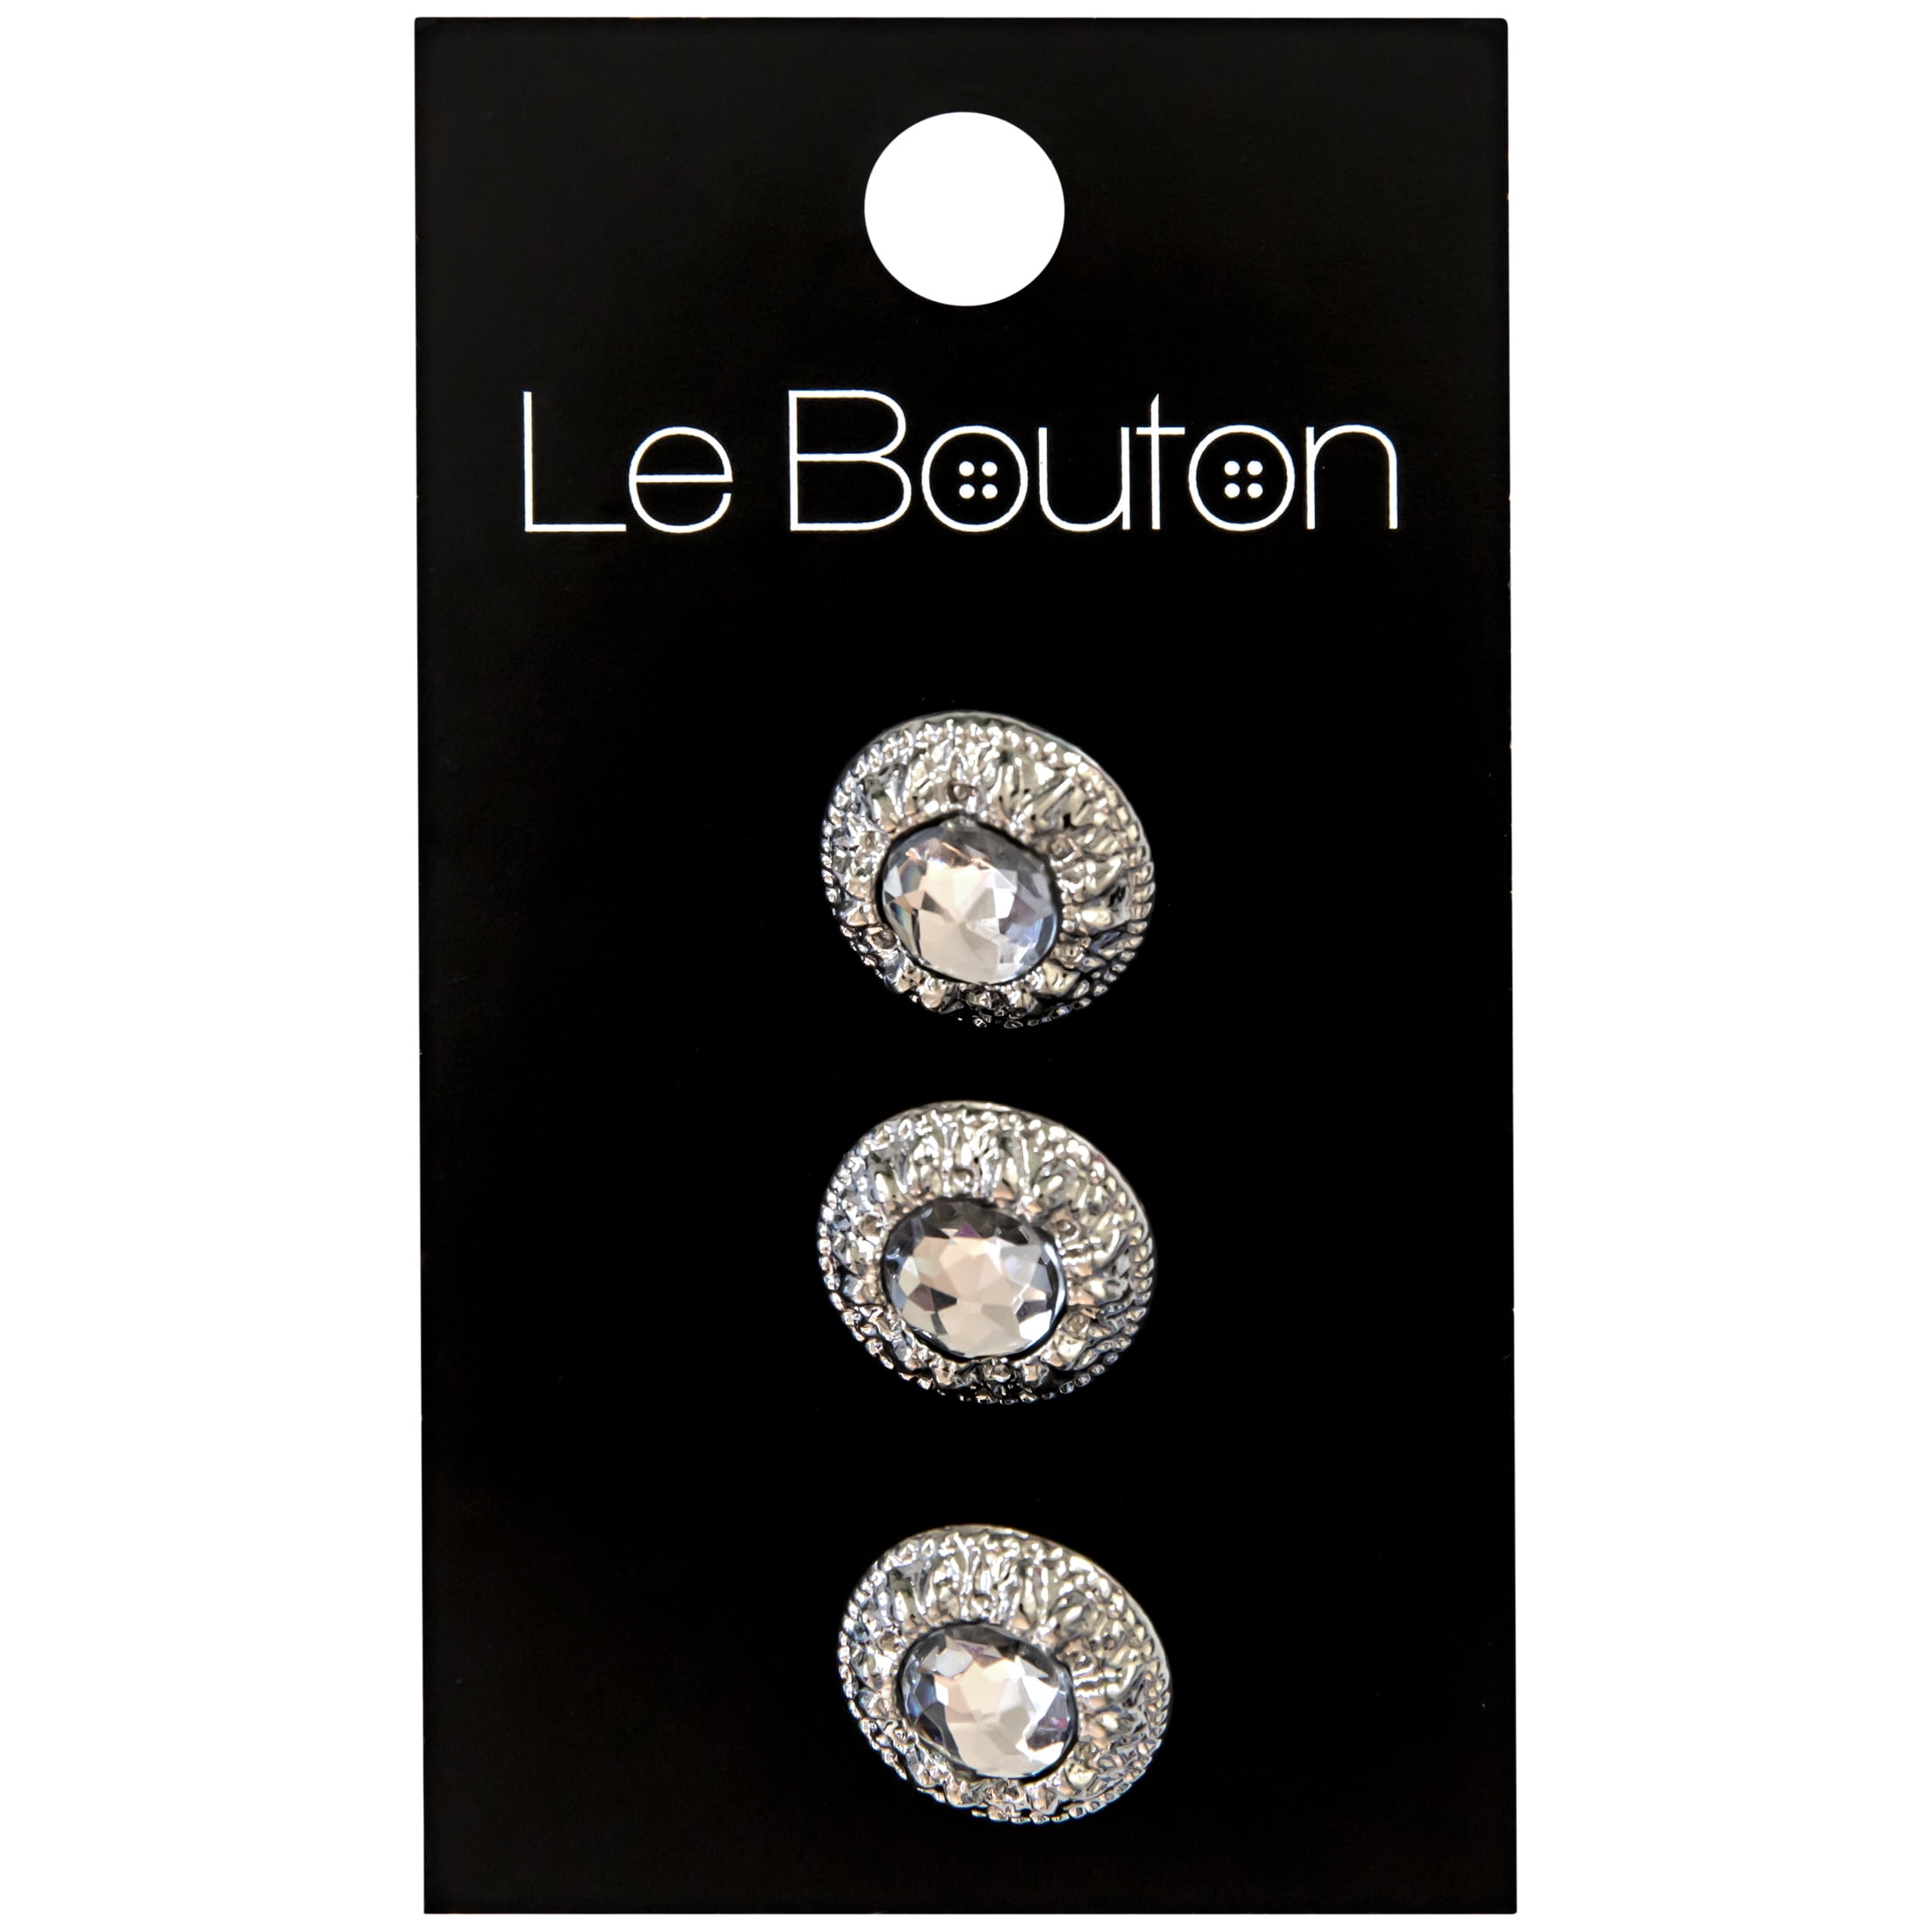 Le Bouton Silver 5/8 Glitz Crystal Shank Button, 3 Pieces